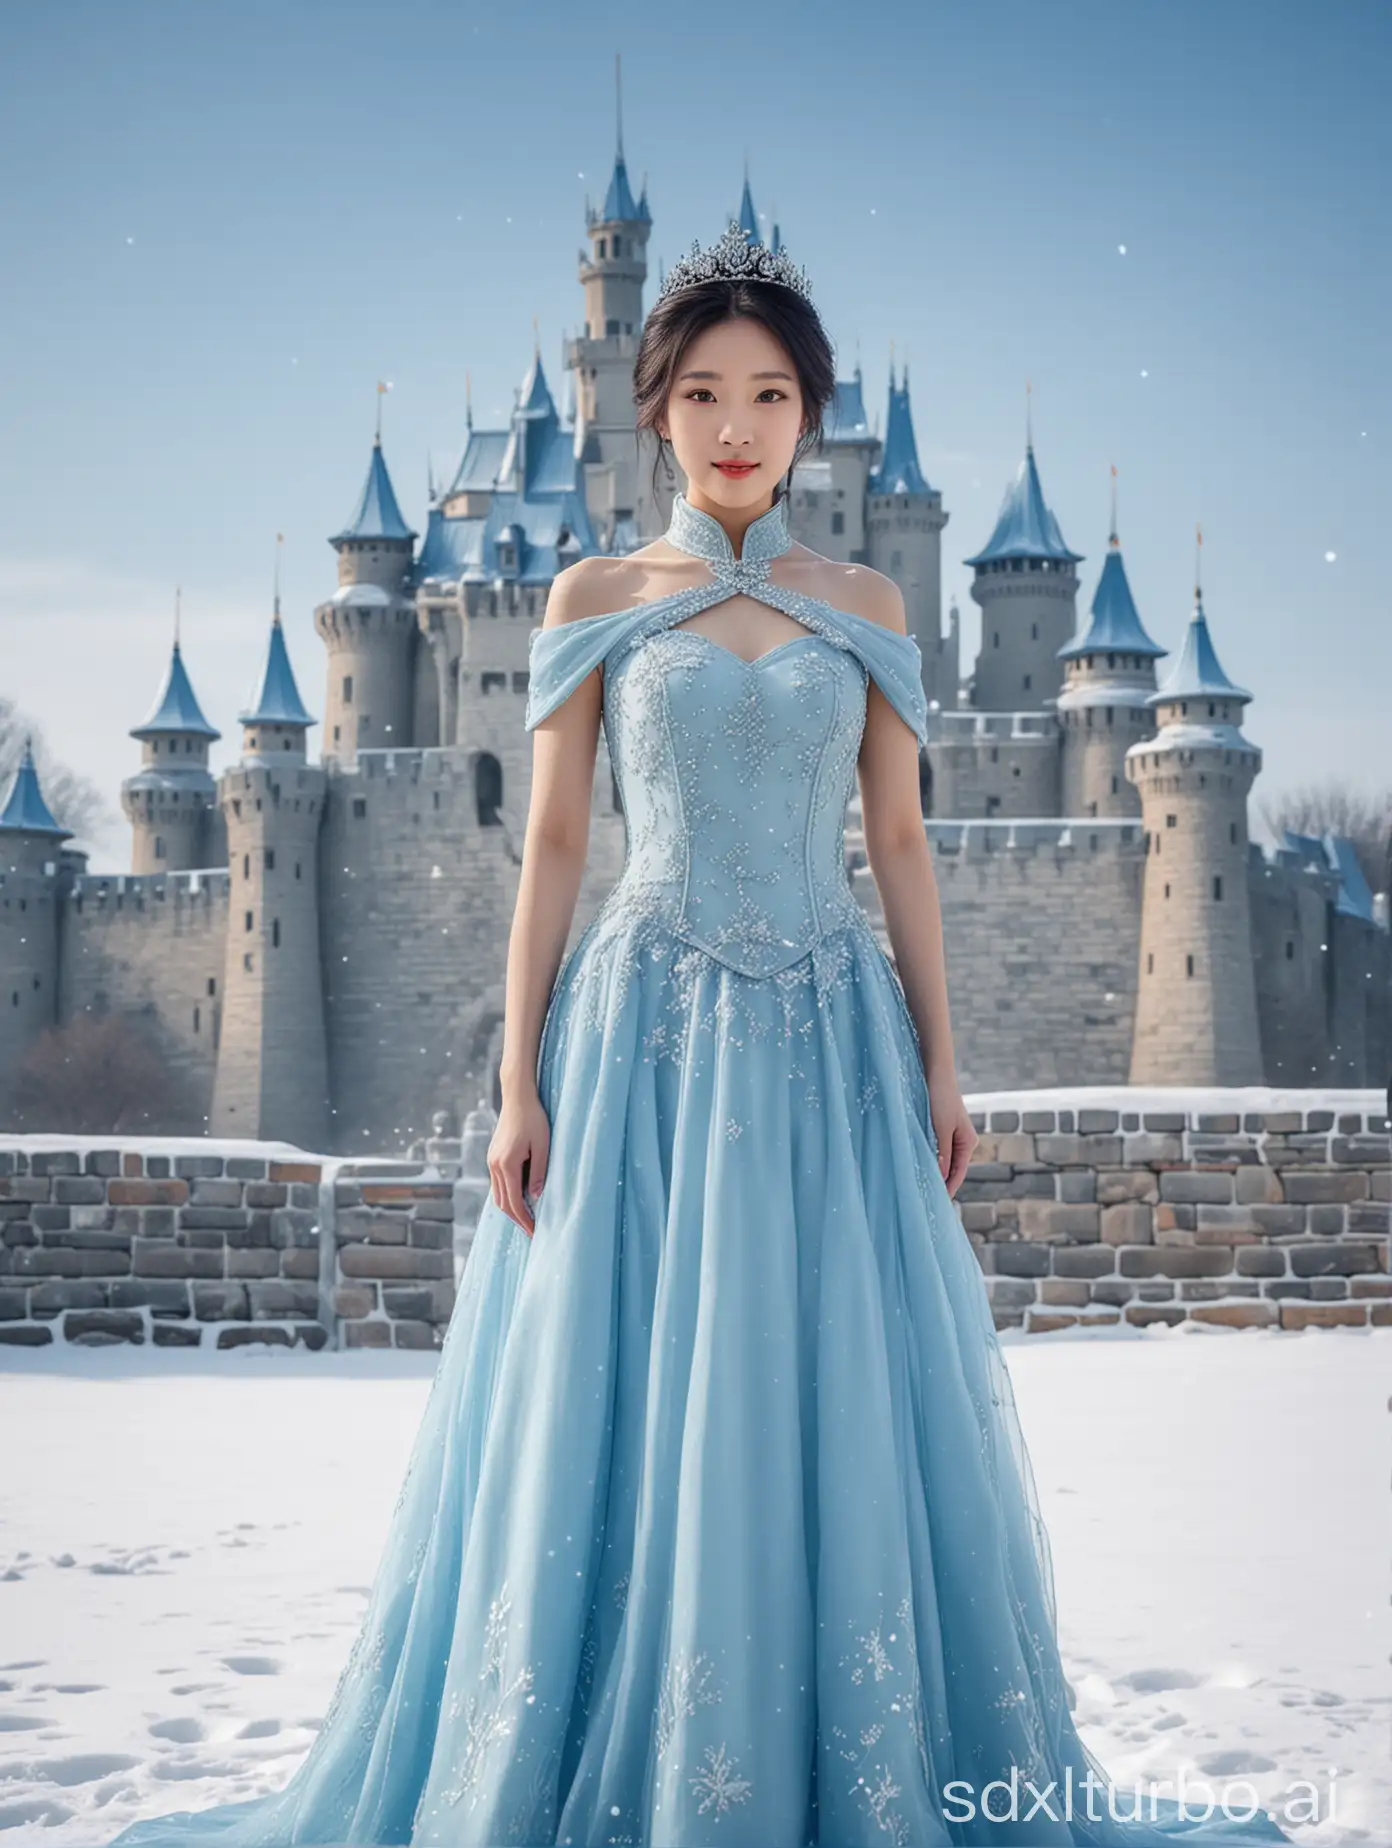 一个中国女孩，穿着蓝色连衣裙，站在雪地里，戴着皇冠，公主，背景是城堡，冰天雪地主题